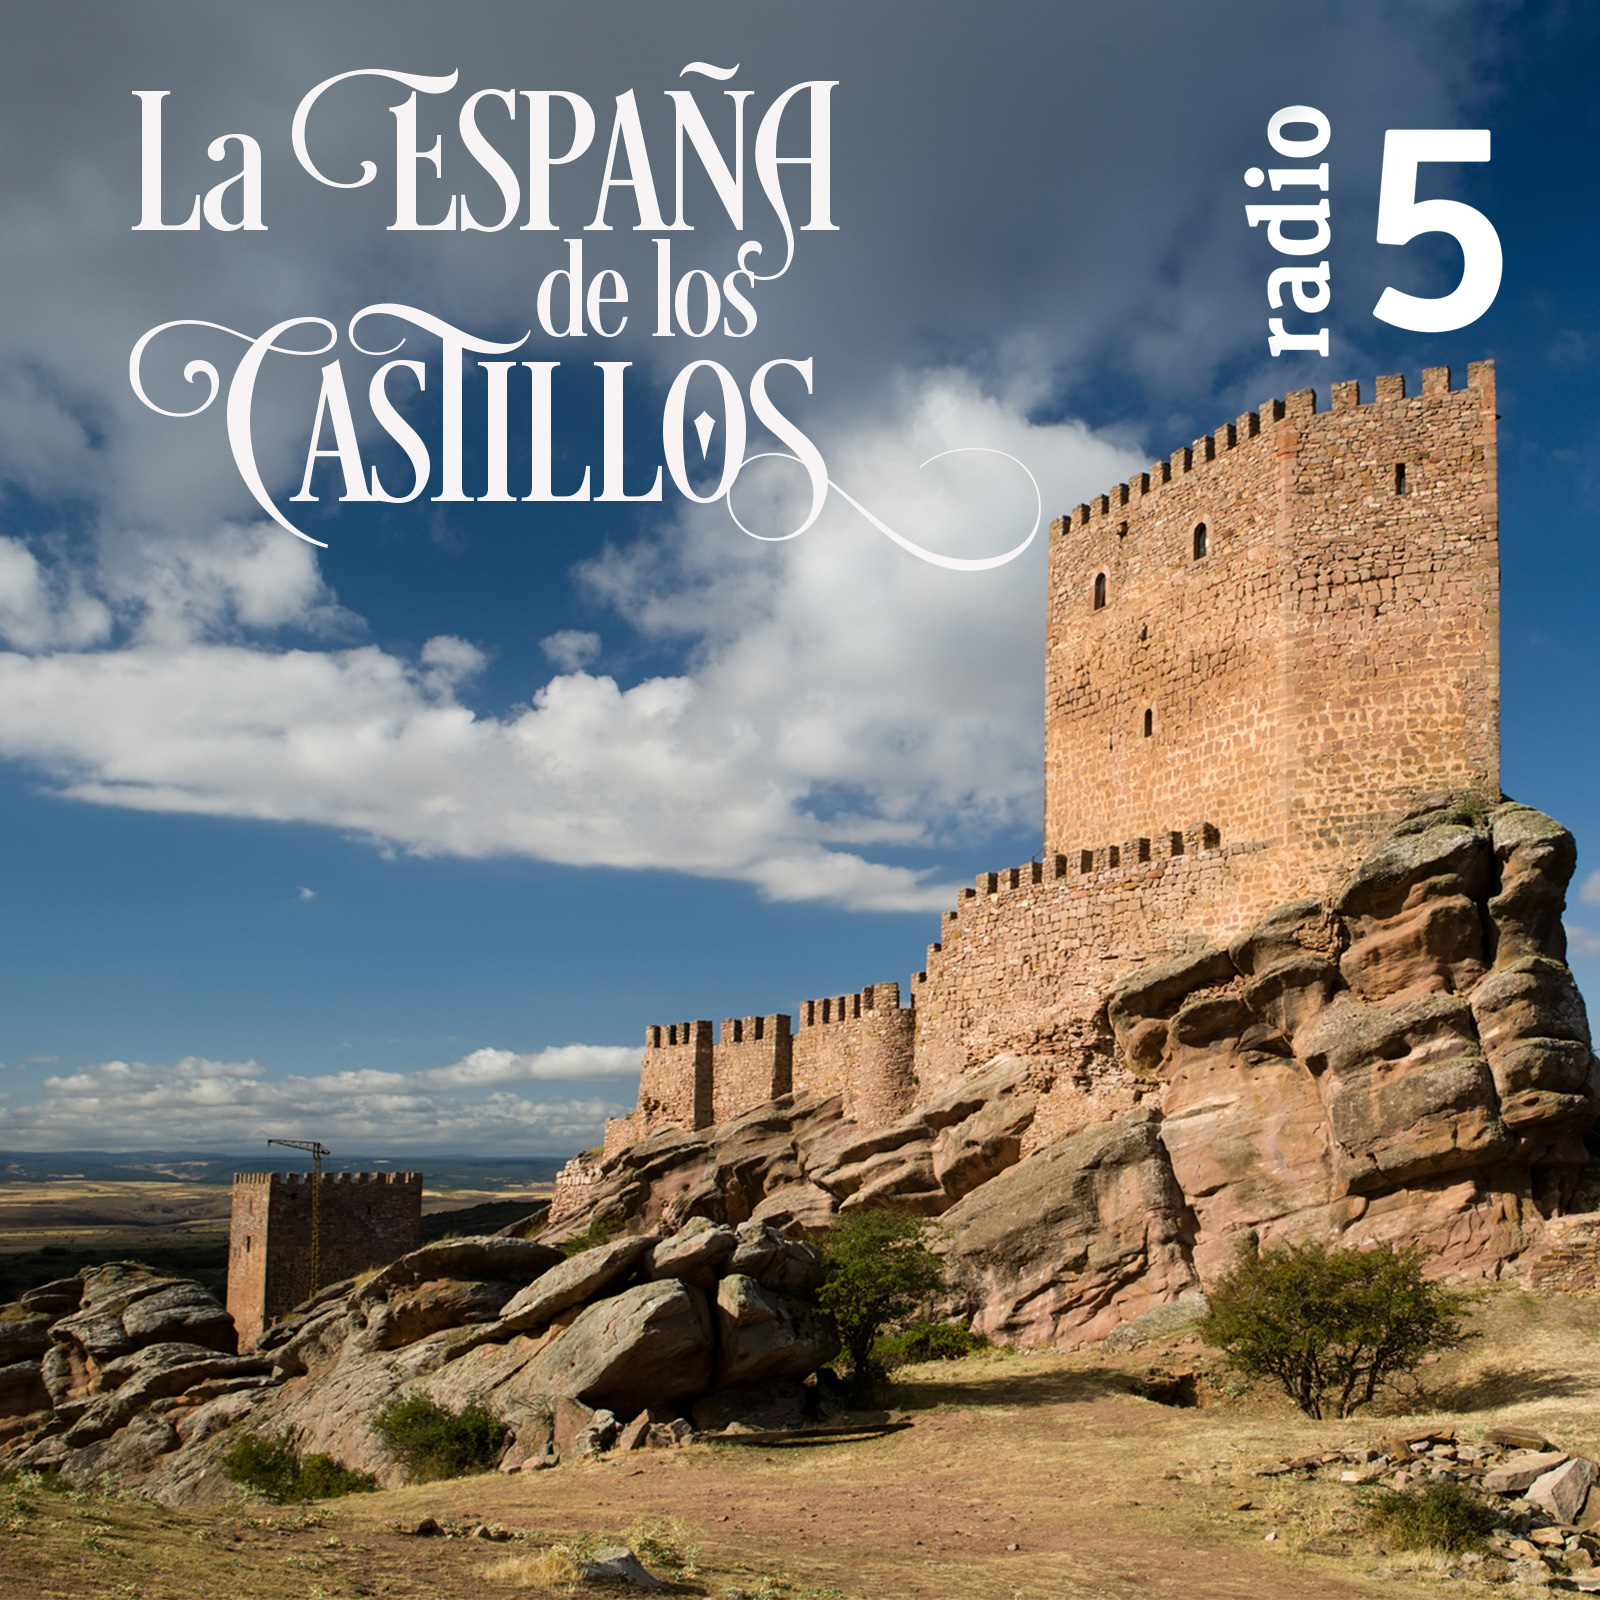 La España de los castillos - Castillo de Burgos - 1/06/19